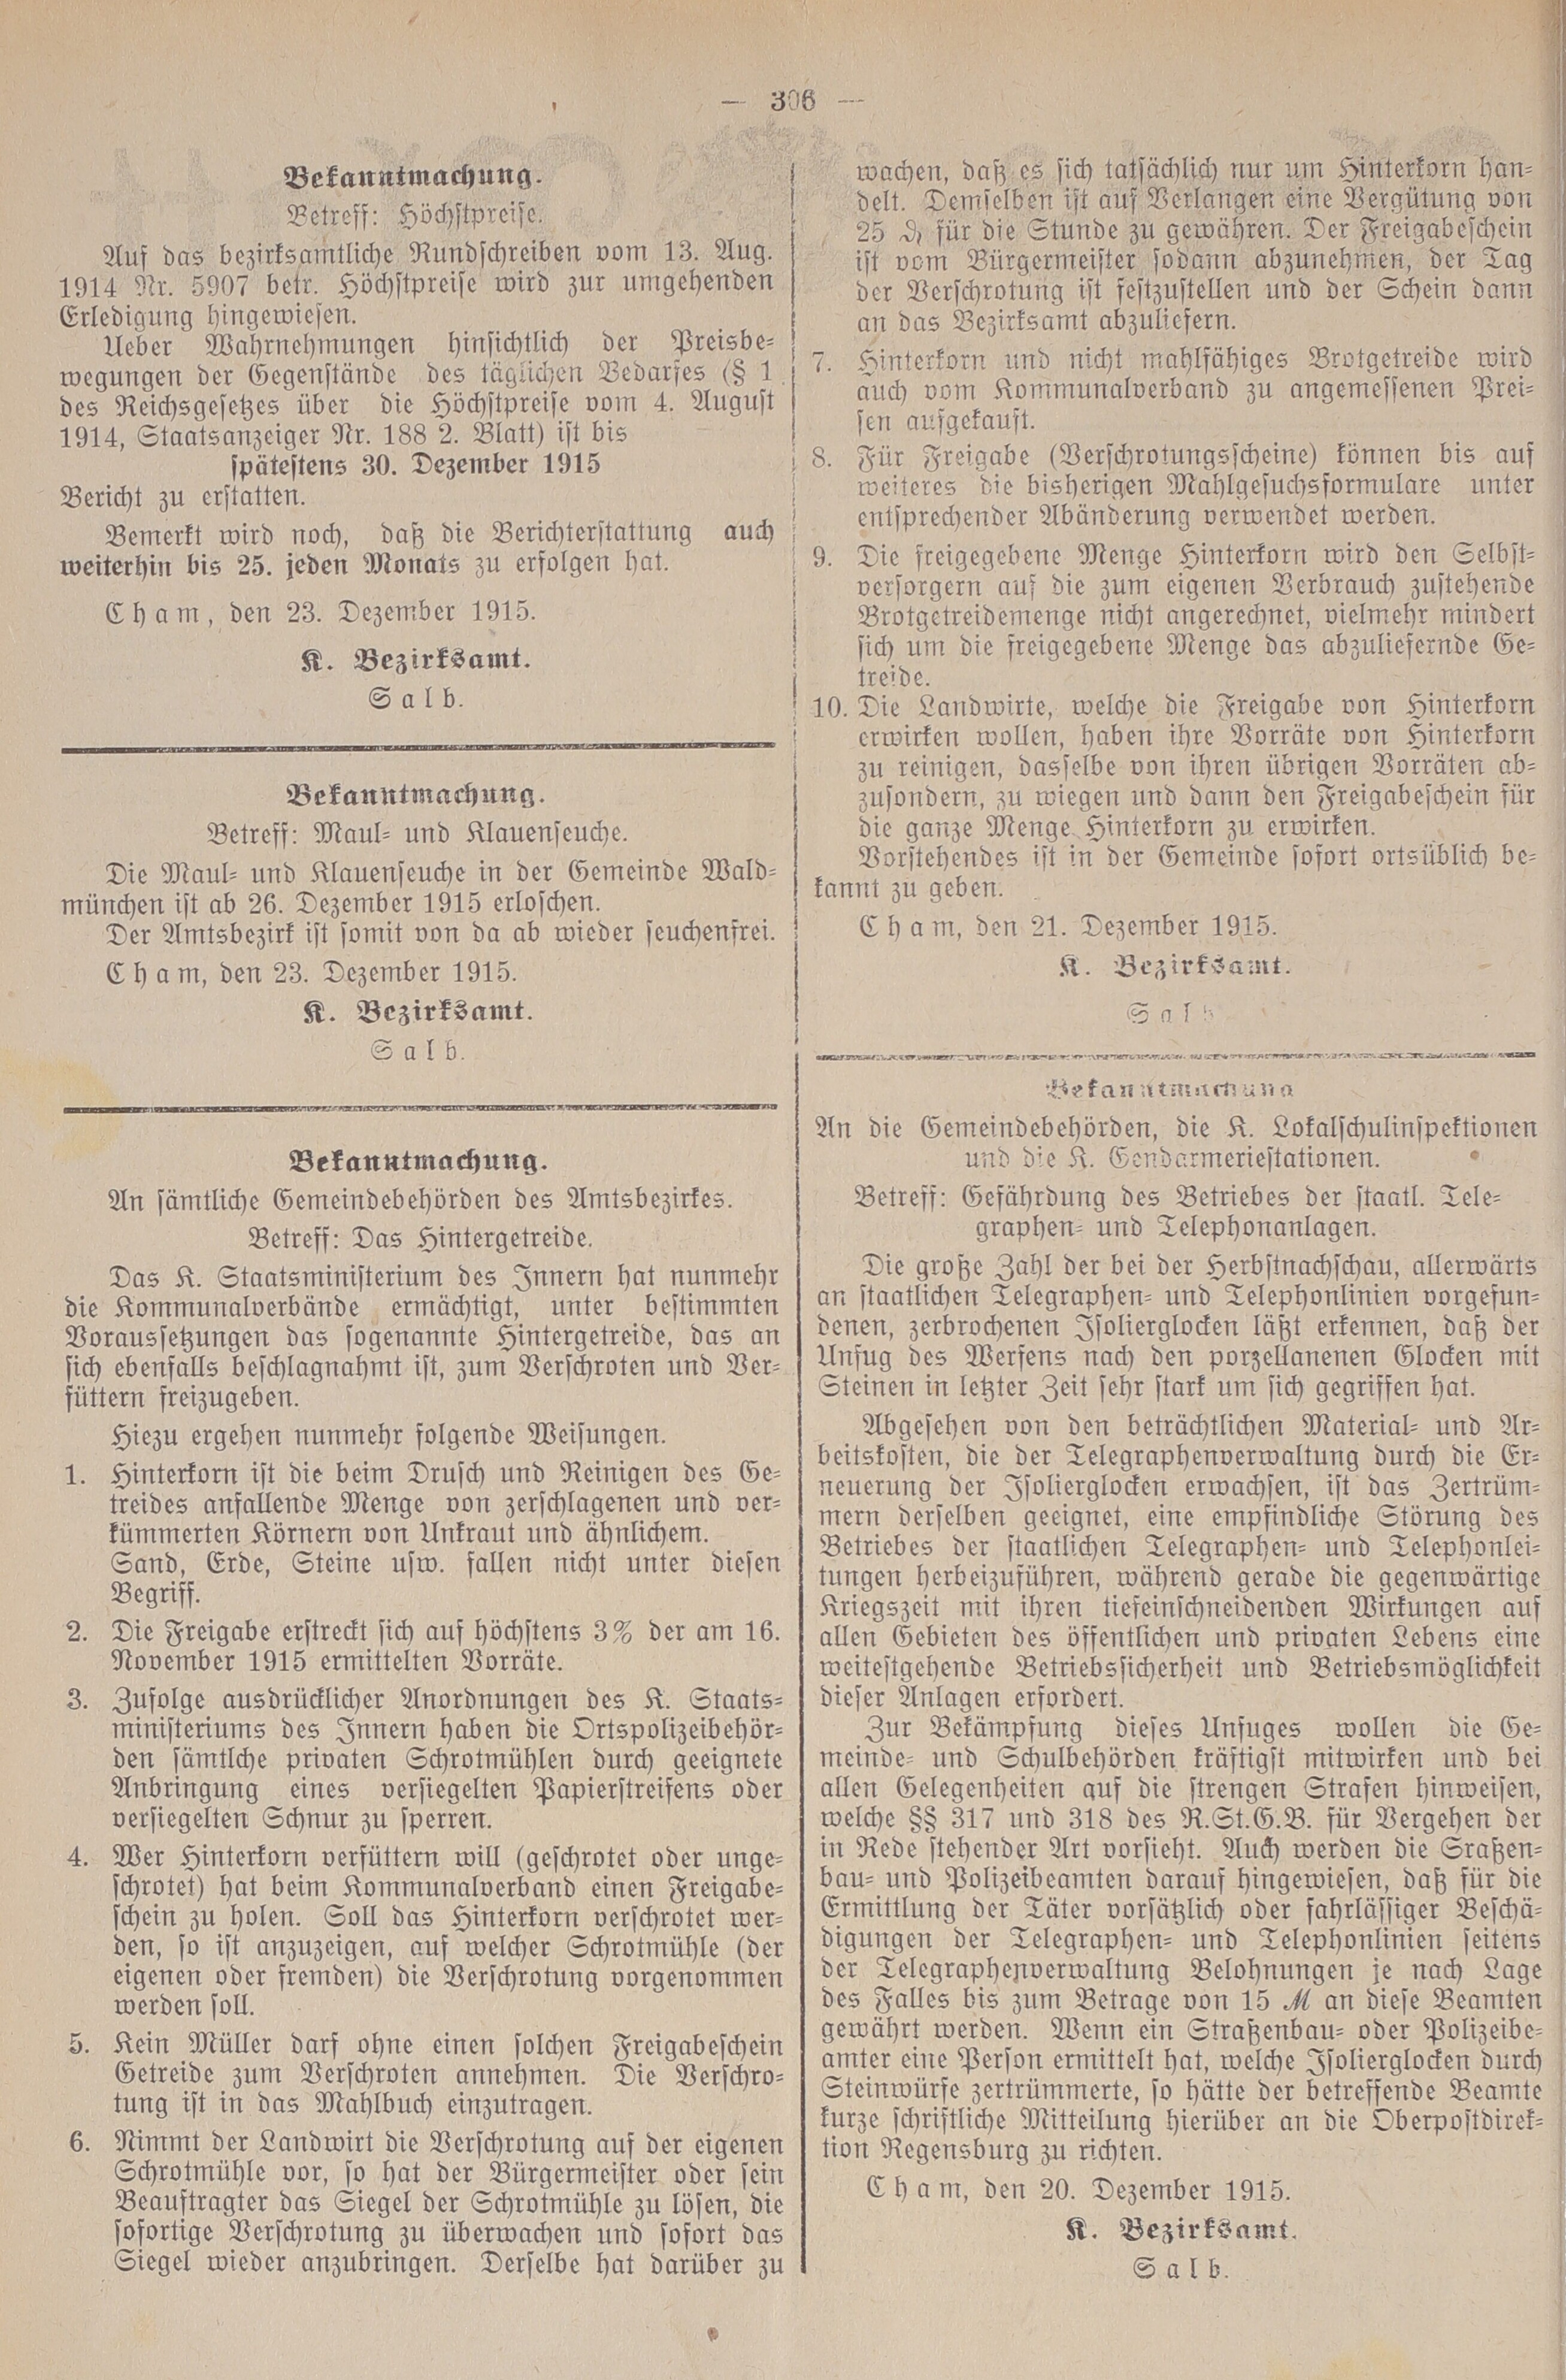 2. amtsblatt-cham-1915-12-28-n83_2990